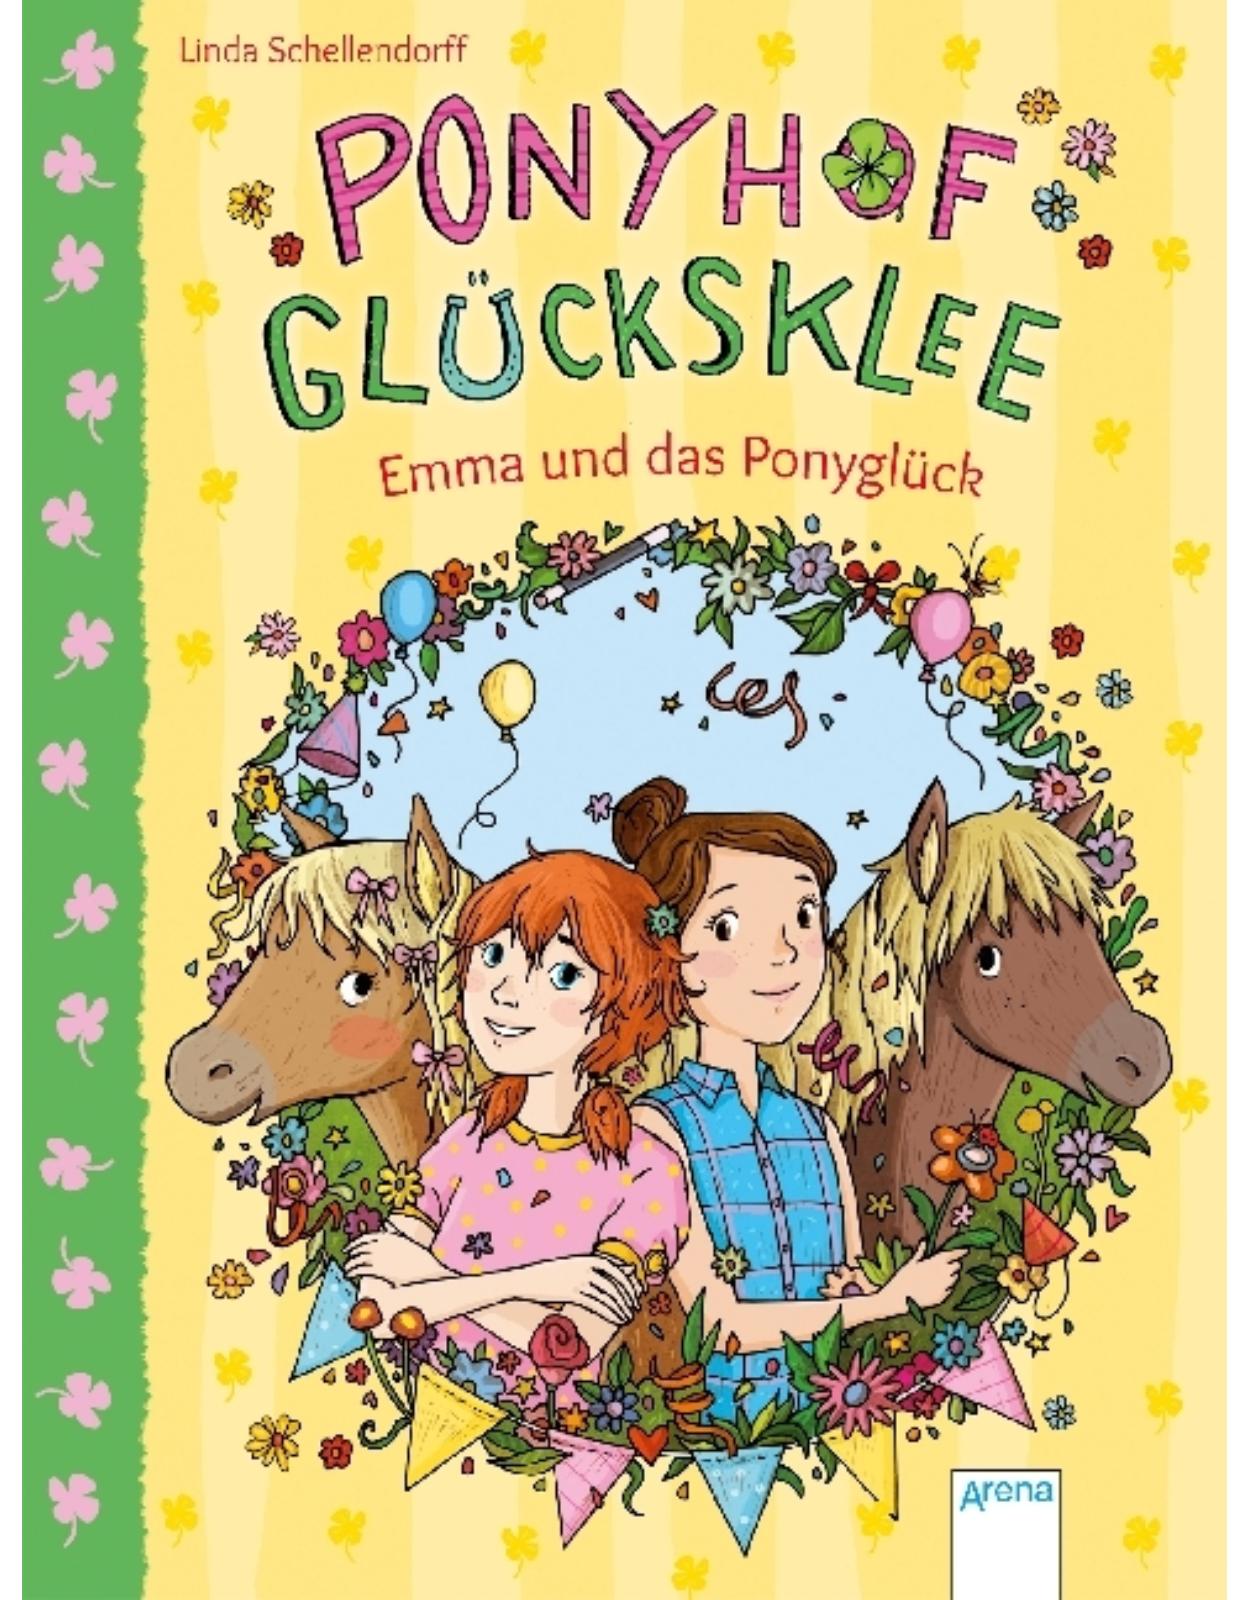 Ponyhof Glucksklee - Emma und das Ponygluck